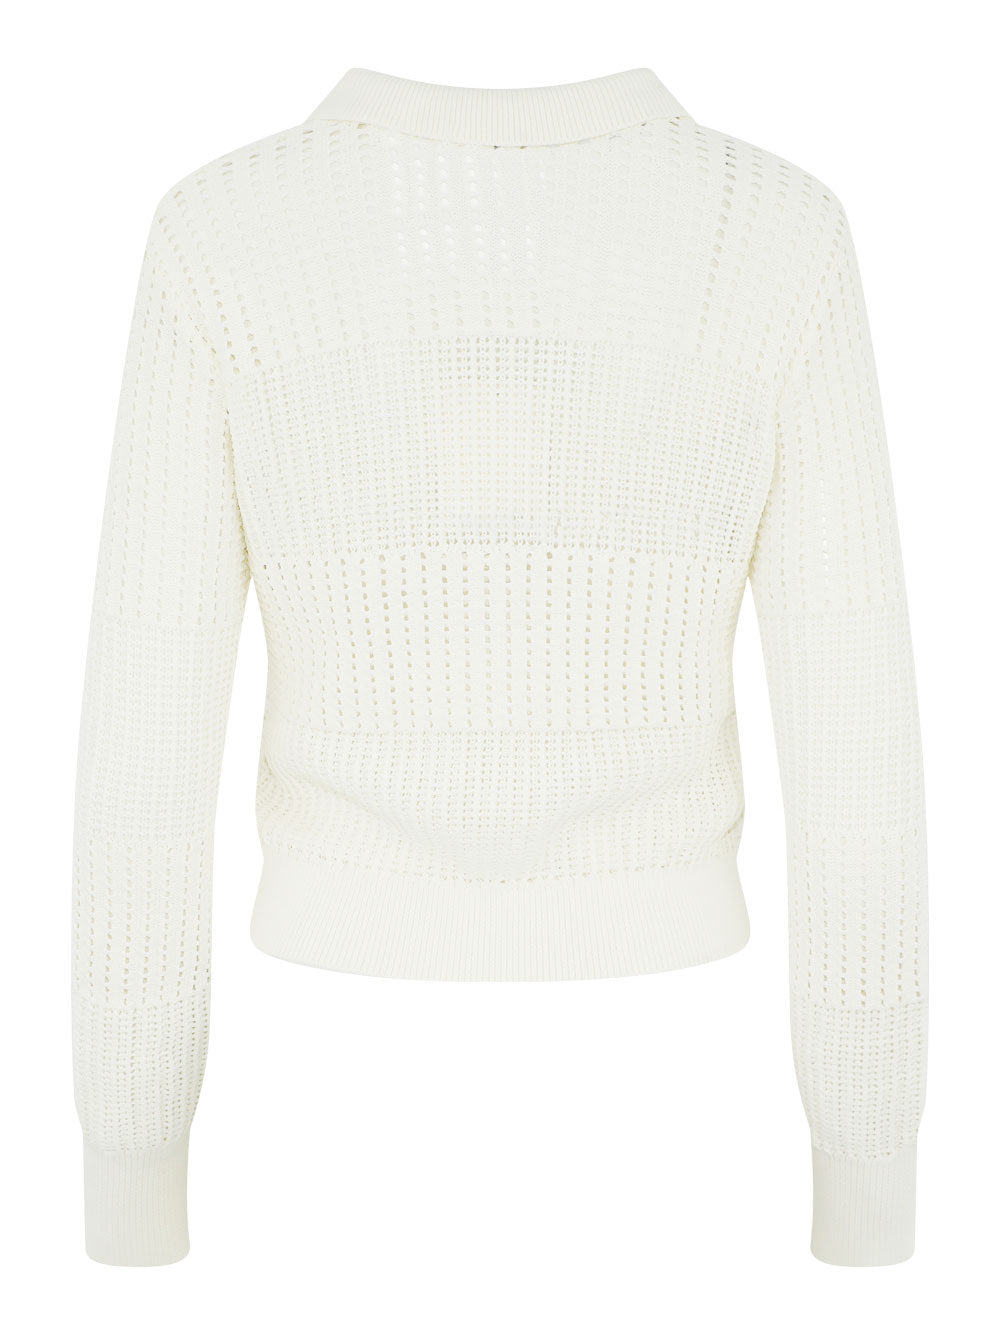 Frame Shrunken Crochet Cardigan in Off-White